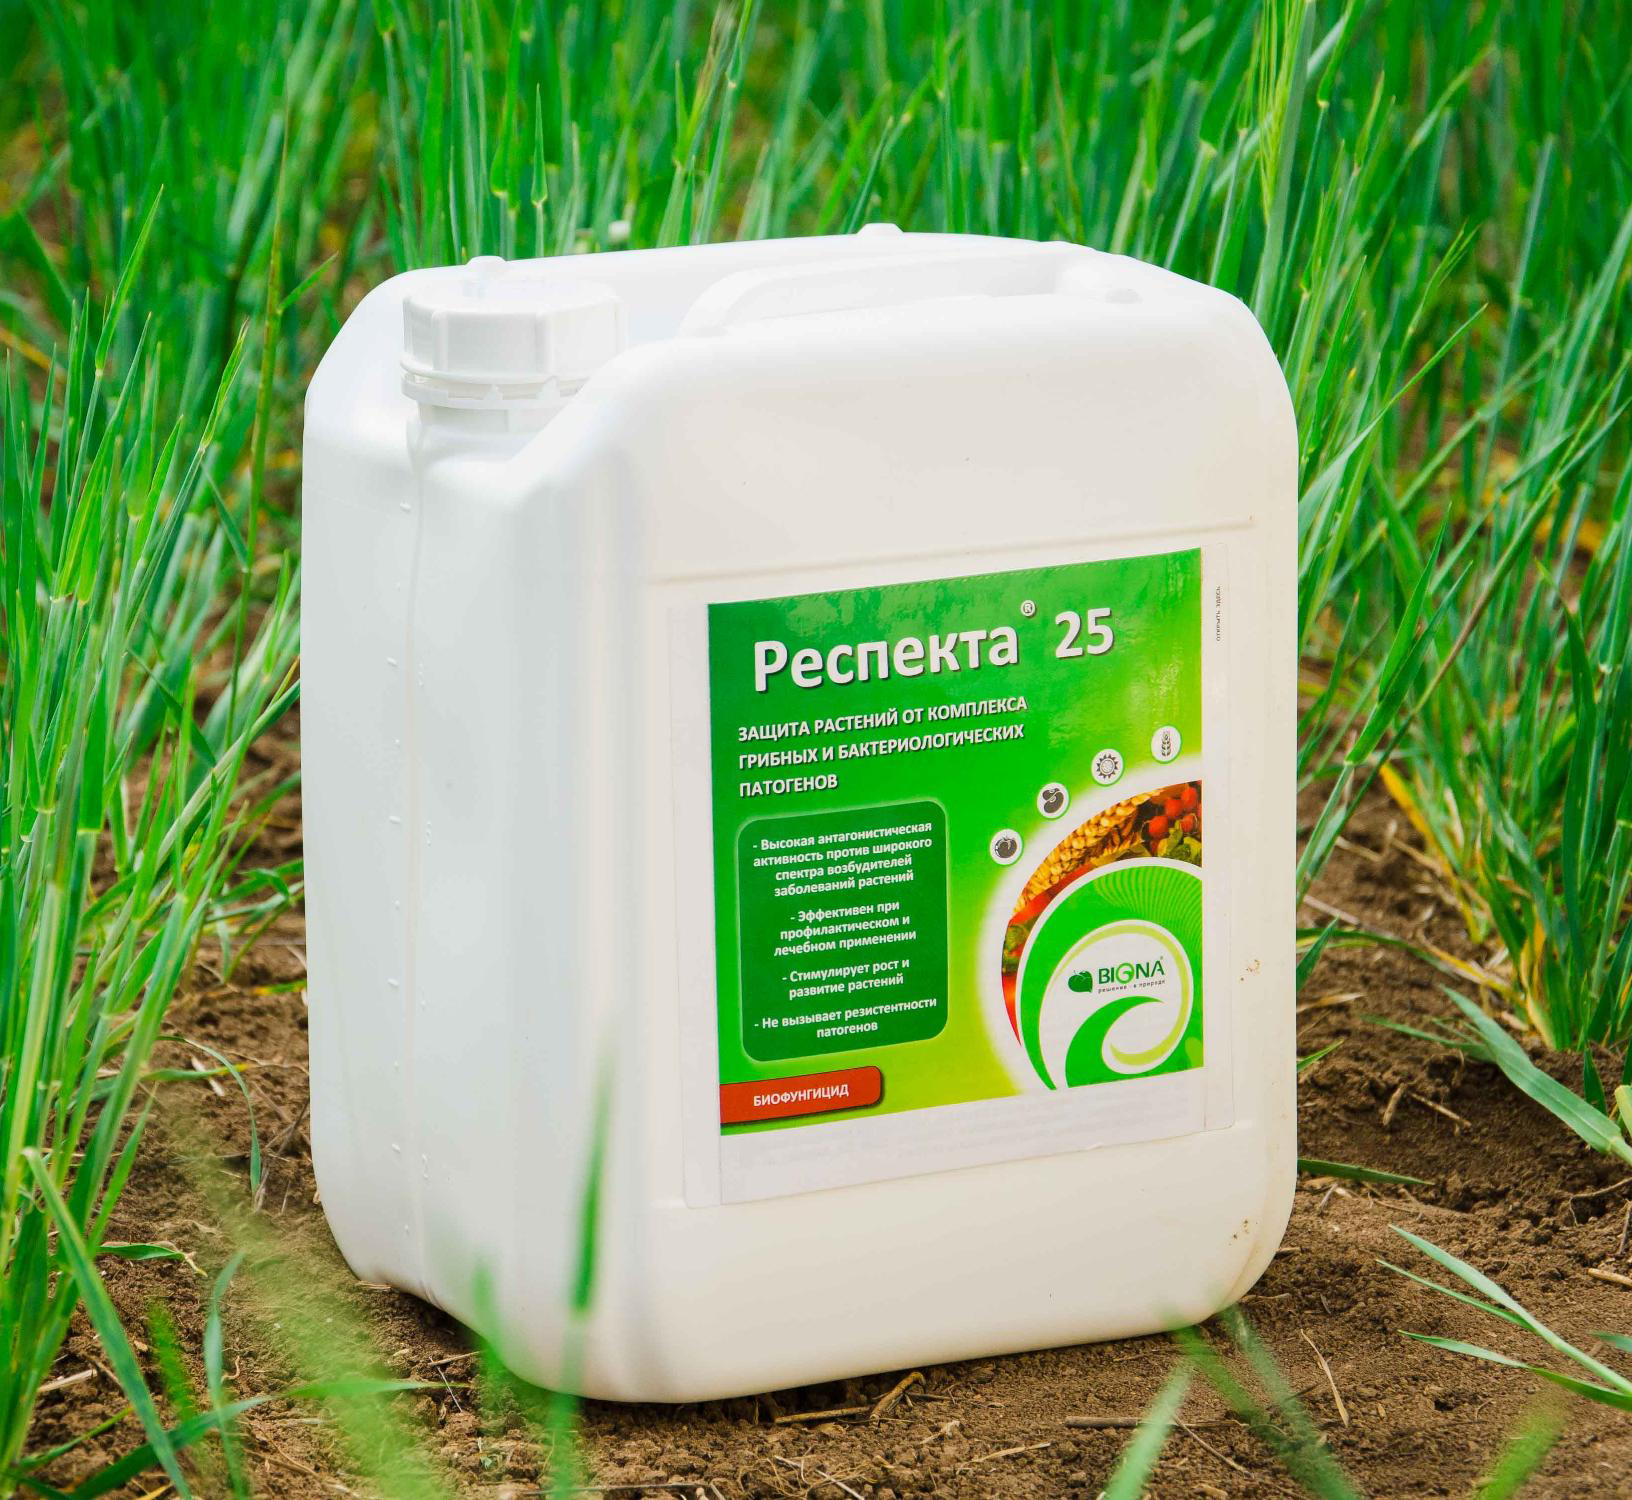 “Респекта® 25” (Псевдобактерин-2) Биофунгицид для обработки в период вегетации